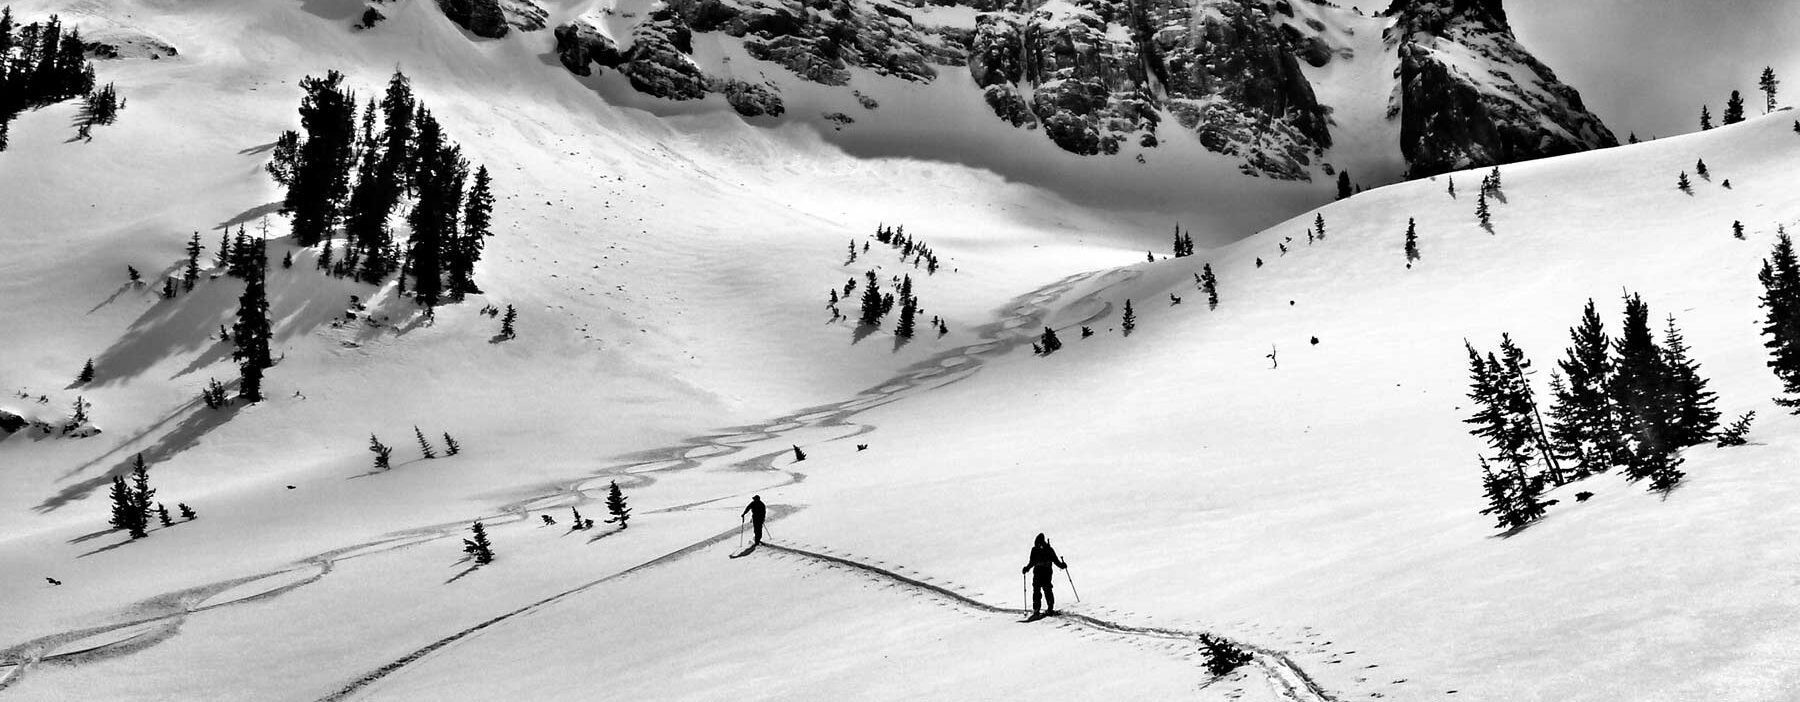 Backcountry skiing montana